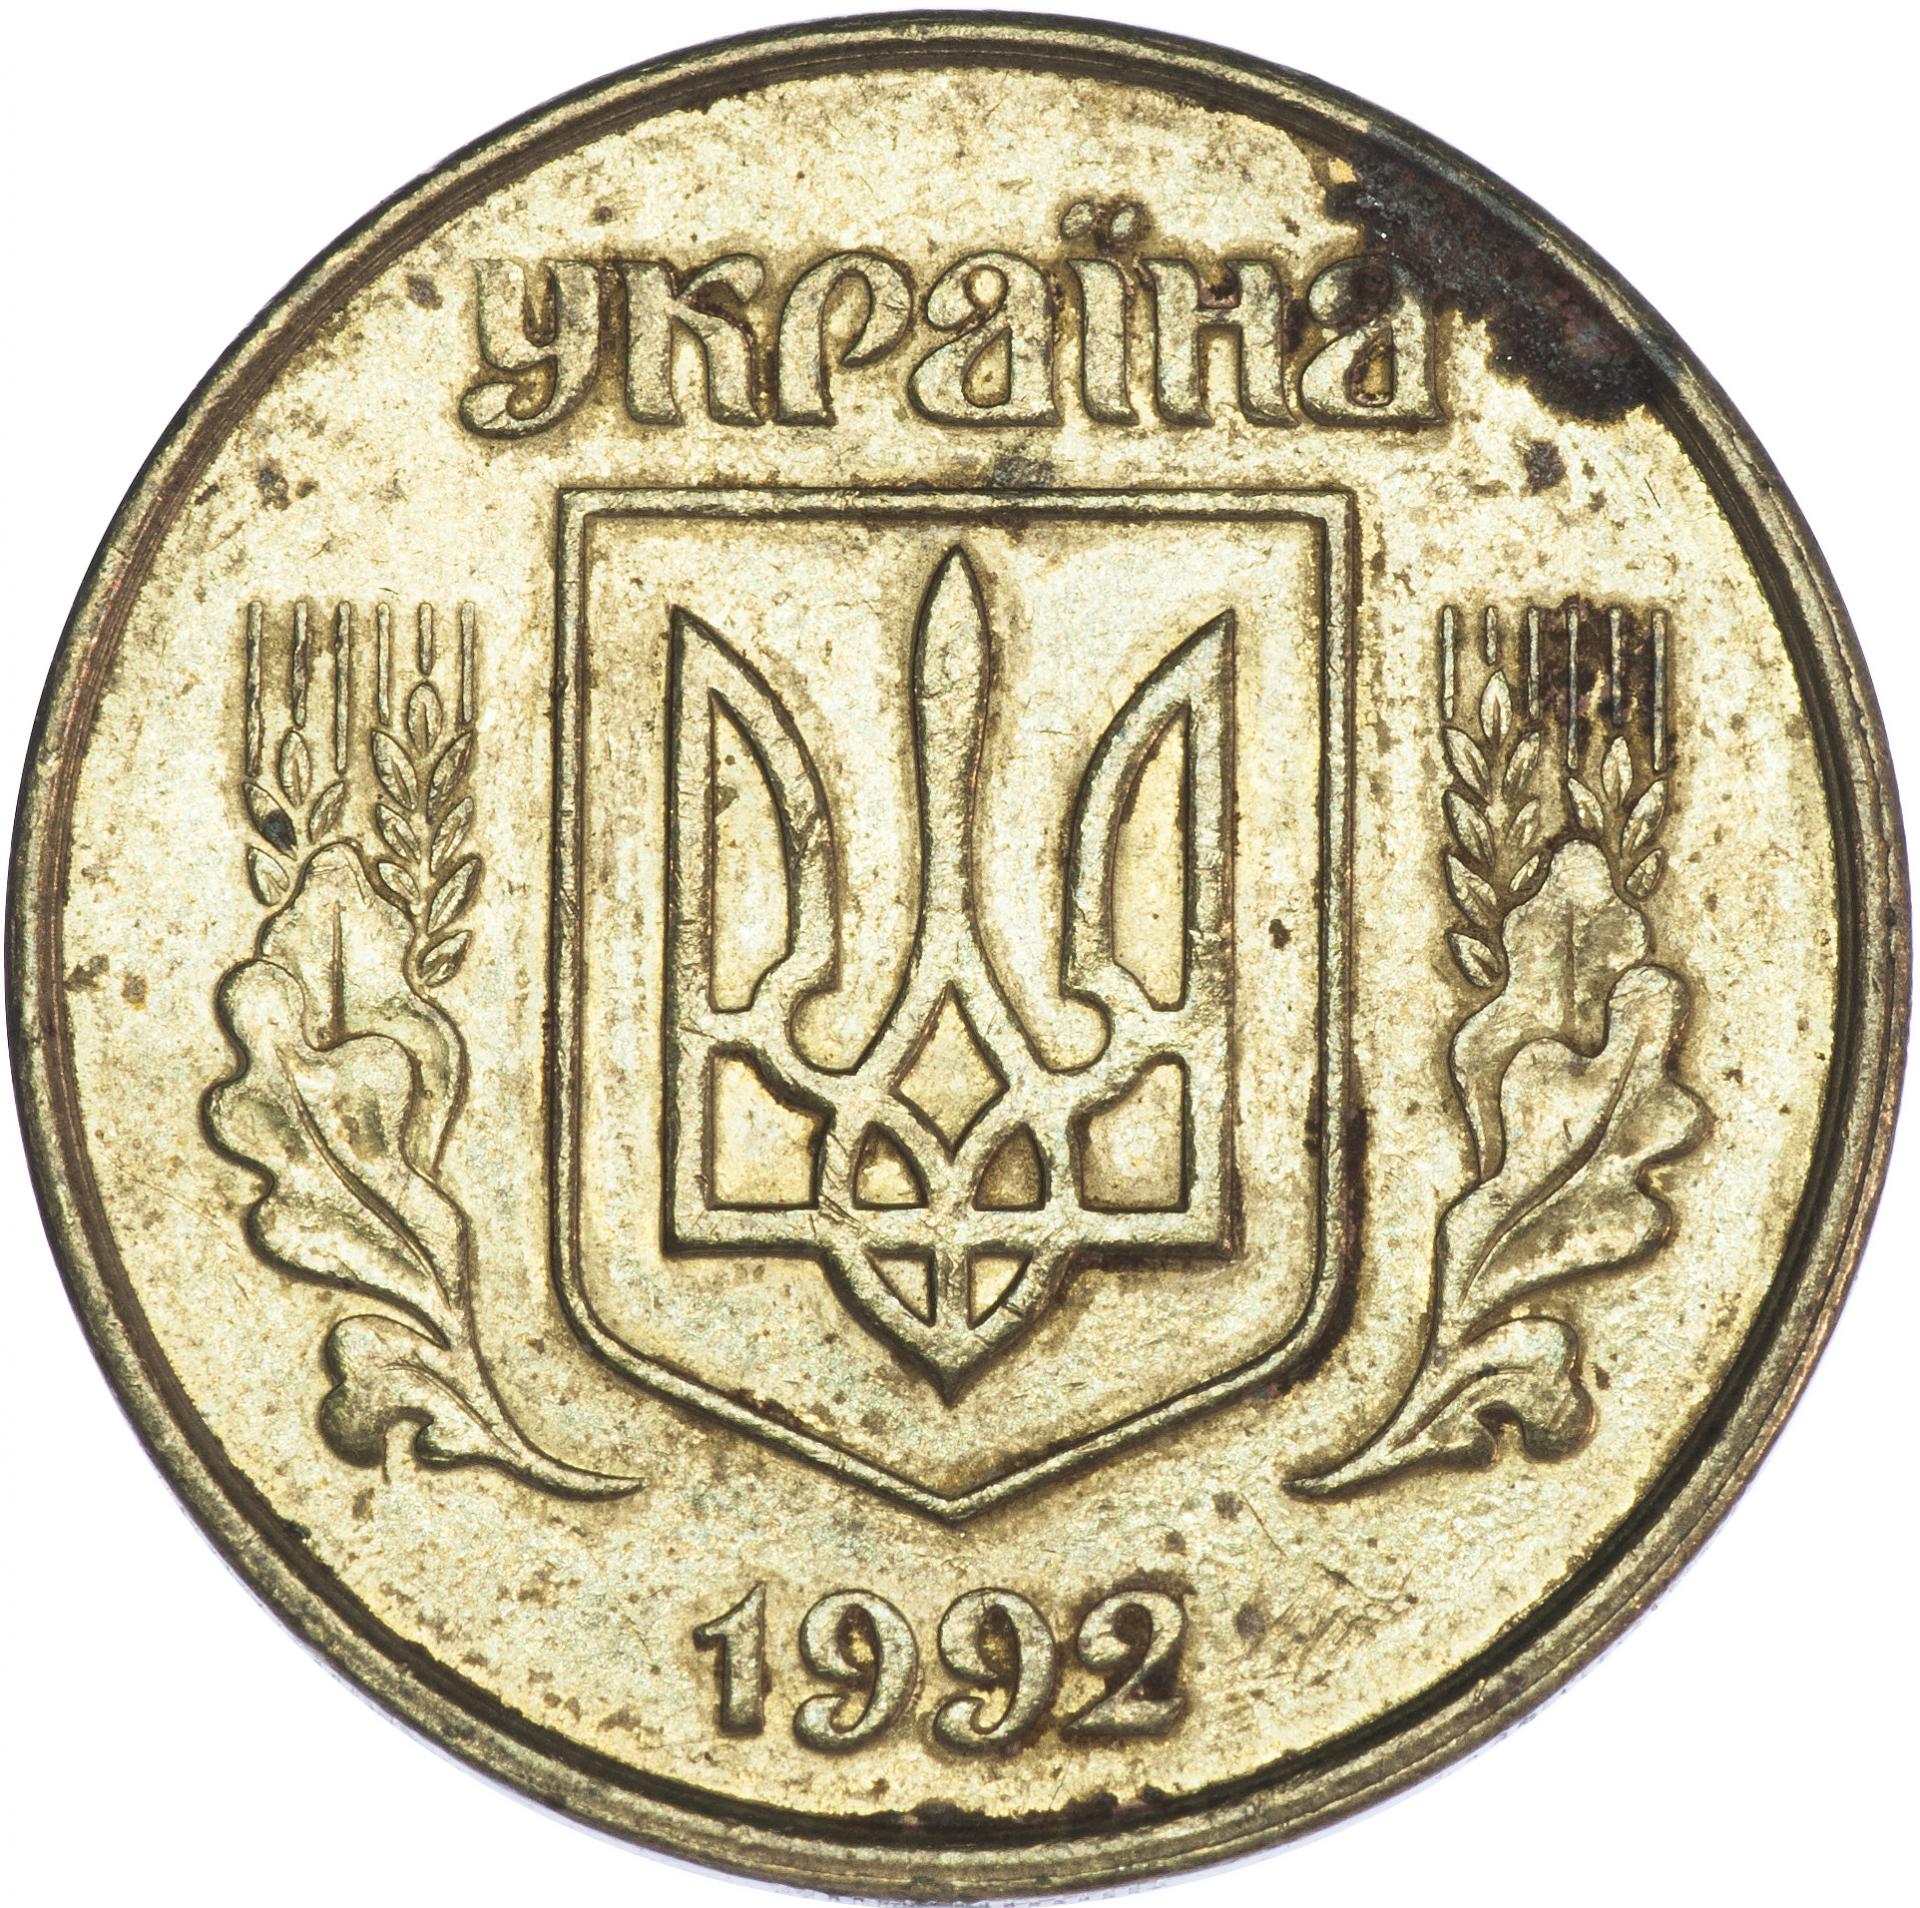 5 копеек 1992 цена. 50 Копеек 1992 Украина. 50 Копеек 1992. Украинская монета 50 копеек 1992. 50 Копеек Украина 1992 в рублях.